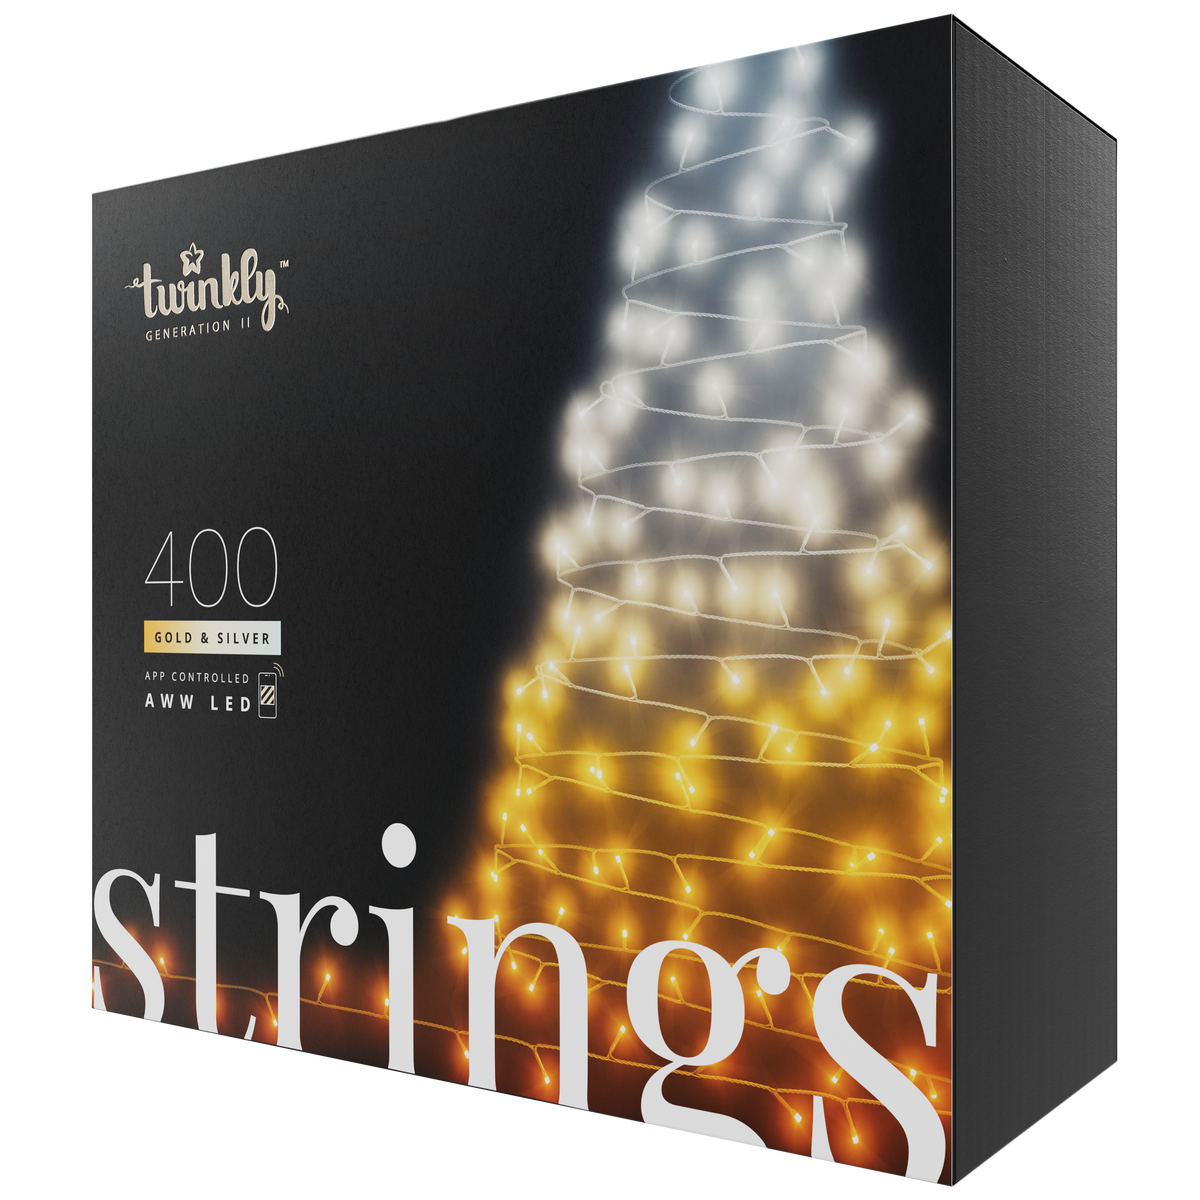 Strings (guld- och silverutgåva)